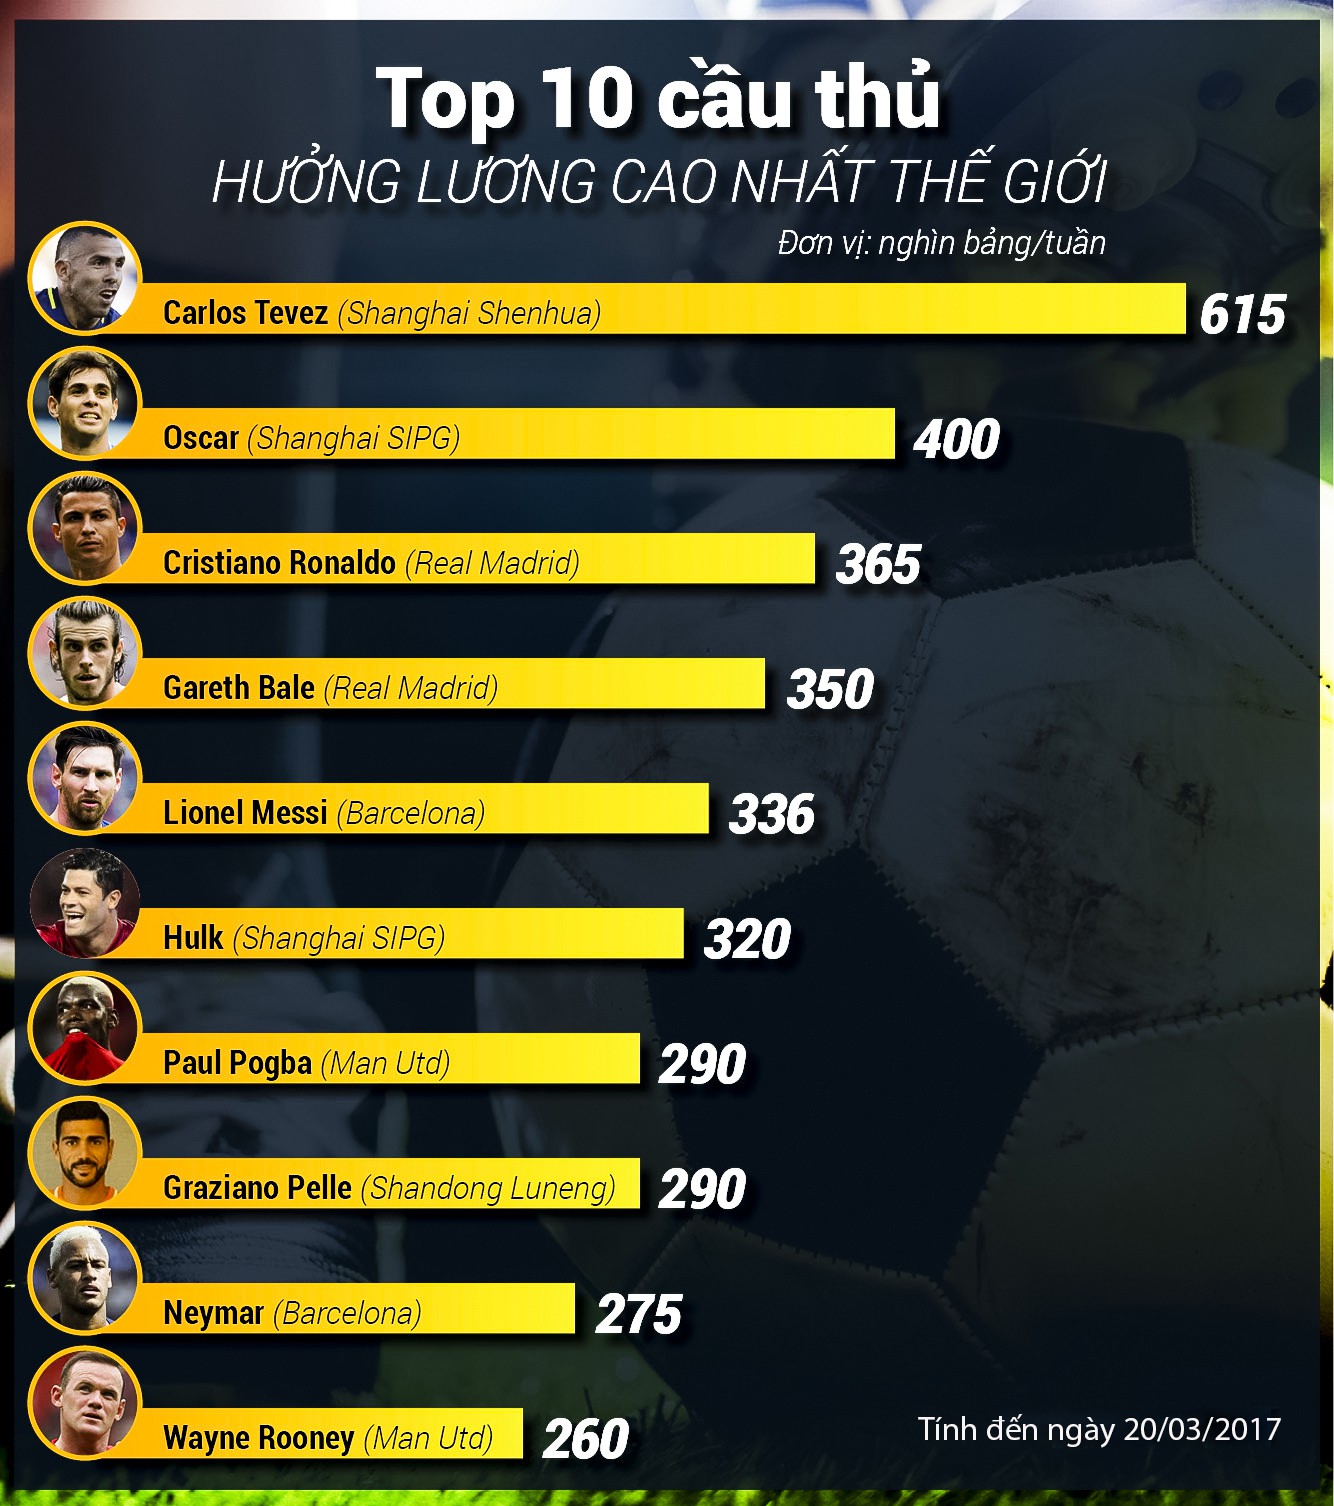 Messi chỉ hưởng lương cao thứ 5 thế giới